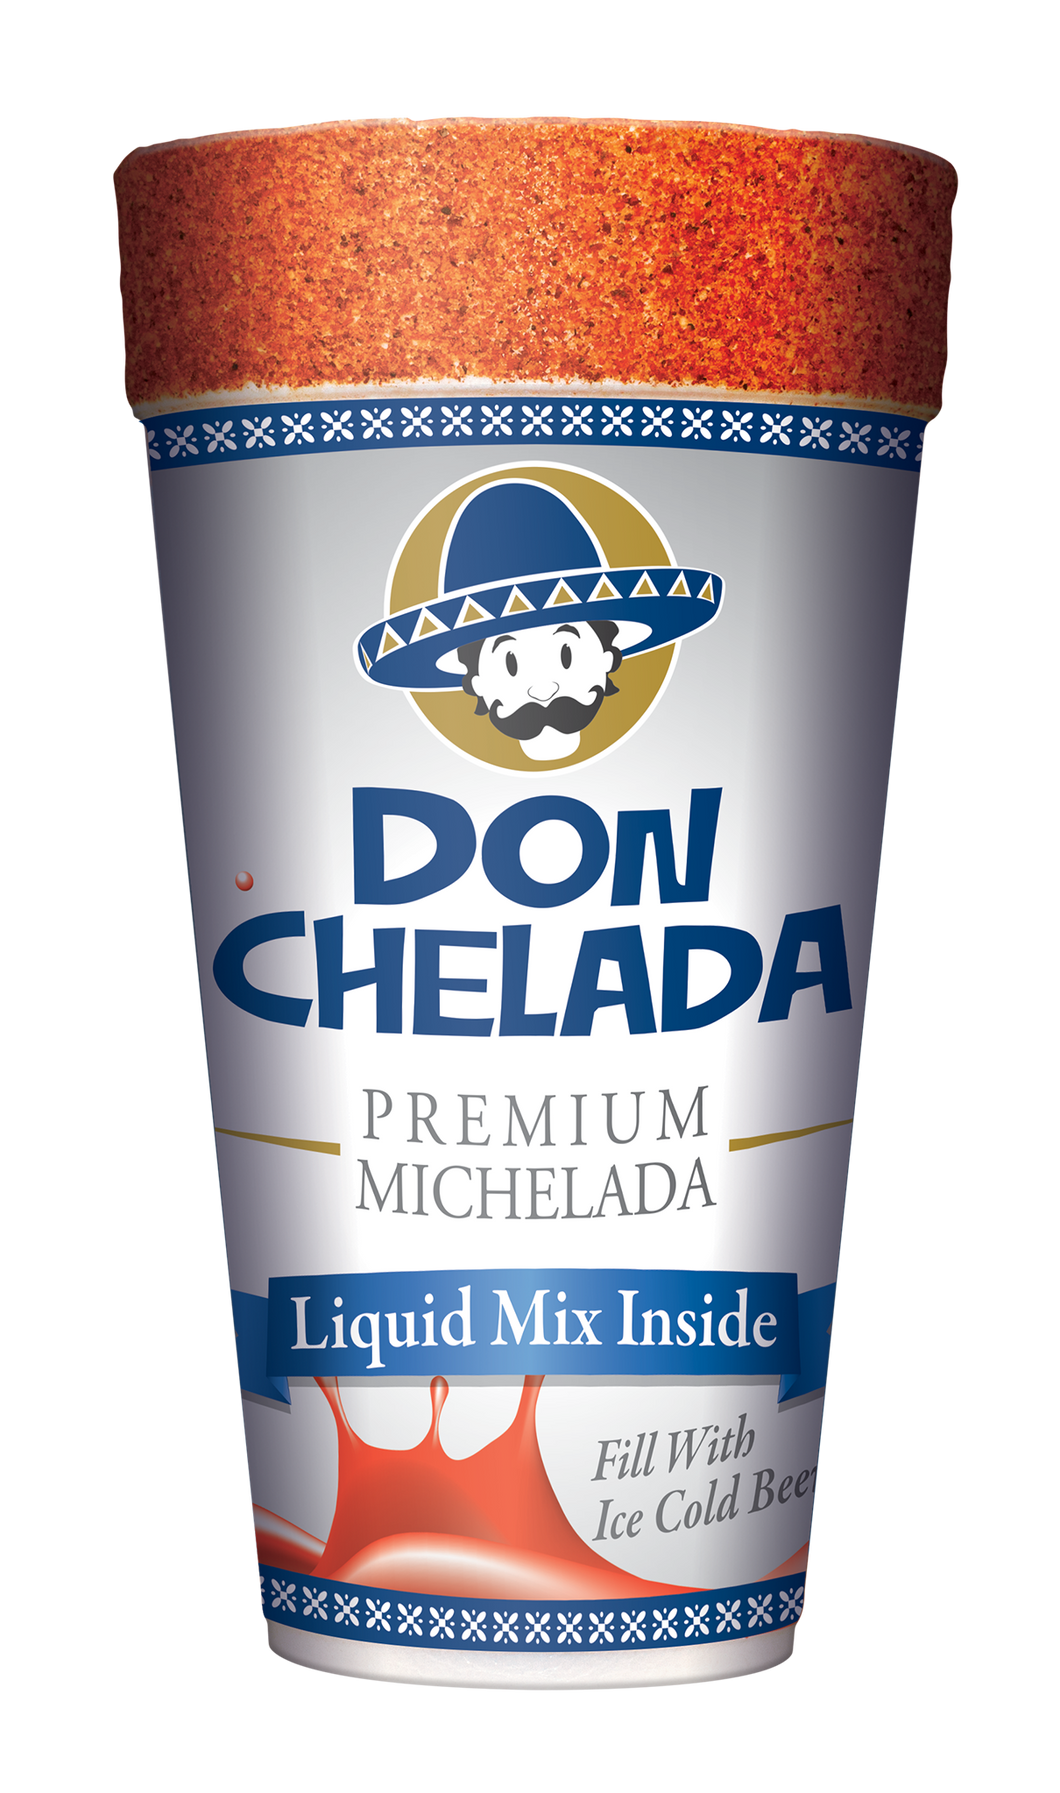 DON CHELADA MICHELADA CUPS